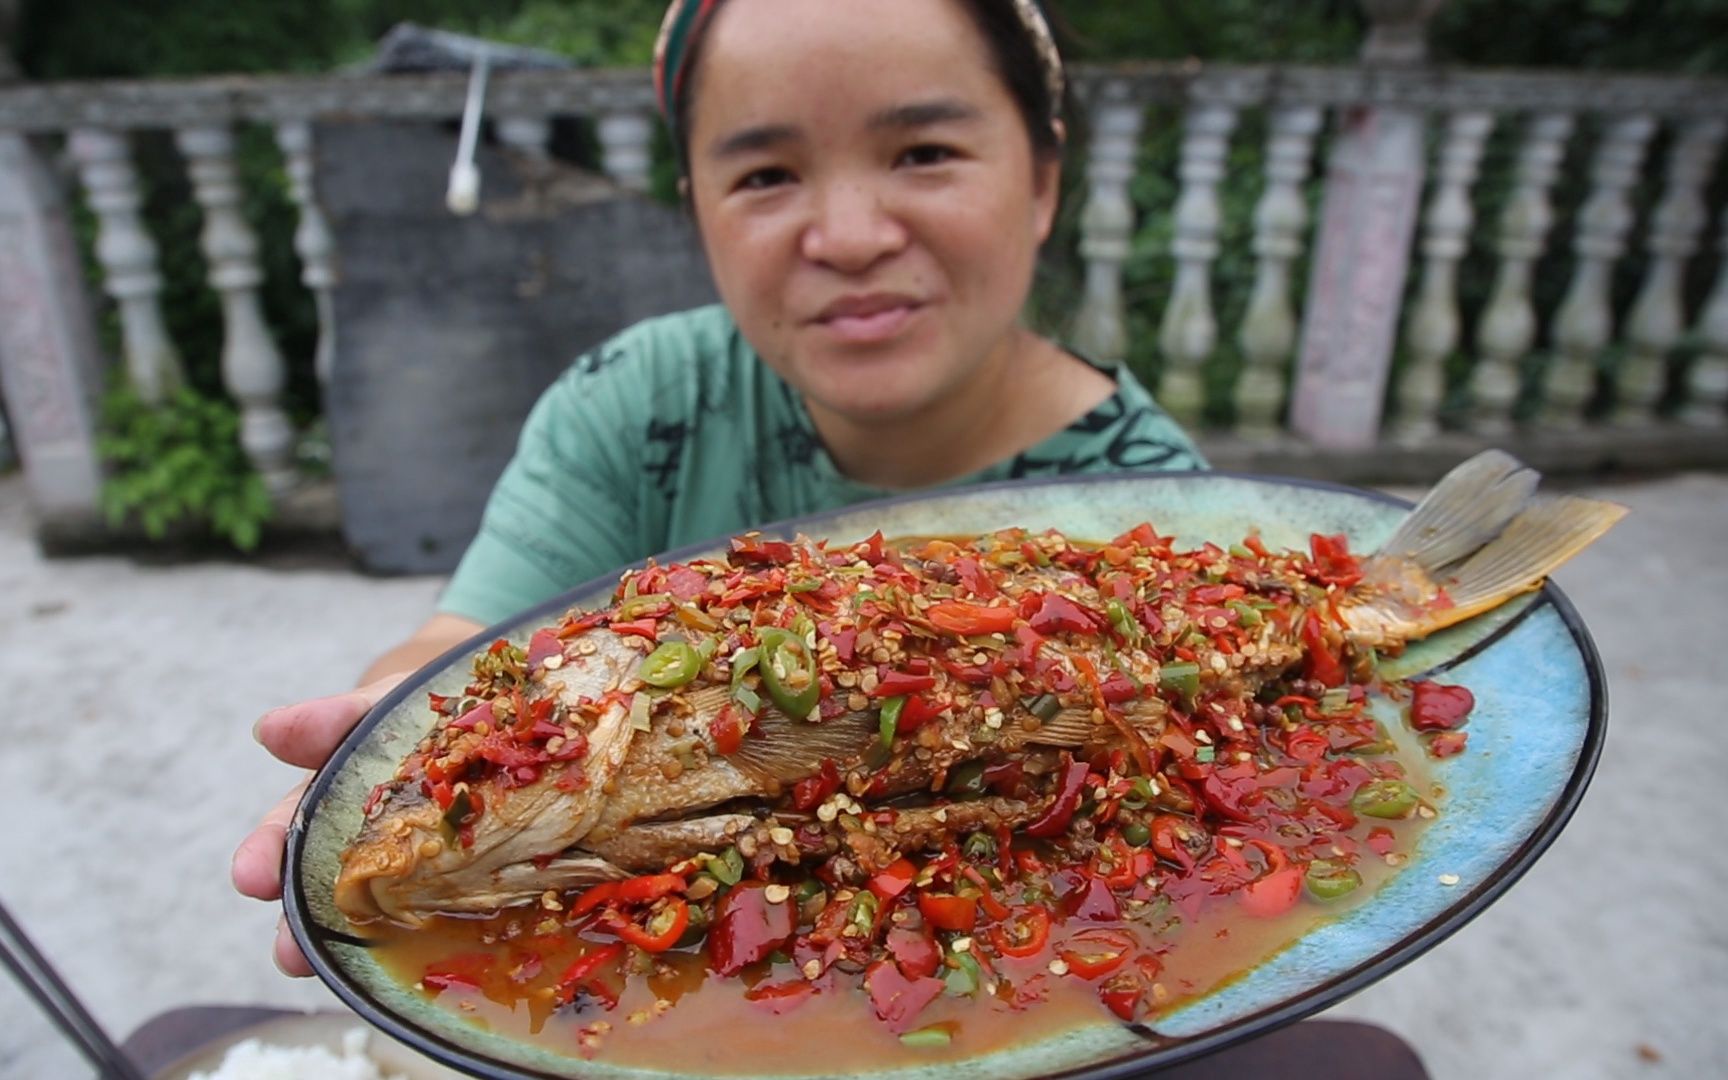 苗大姐有福享了，一条大鲤鱼1斤辣椒，光是辣椒能吃两碗米饭